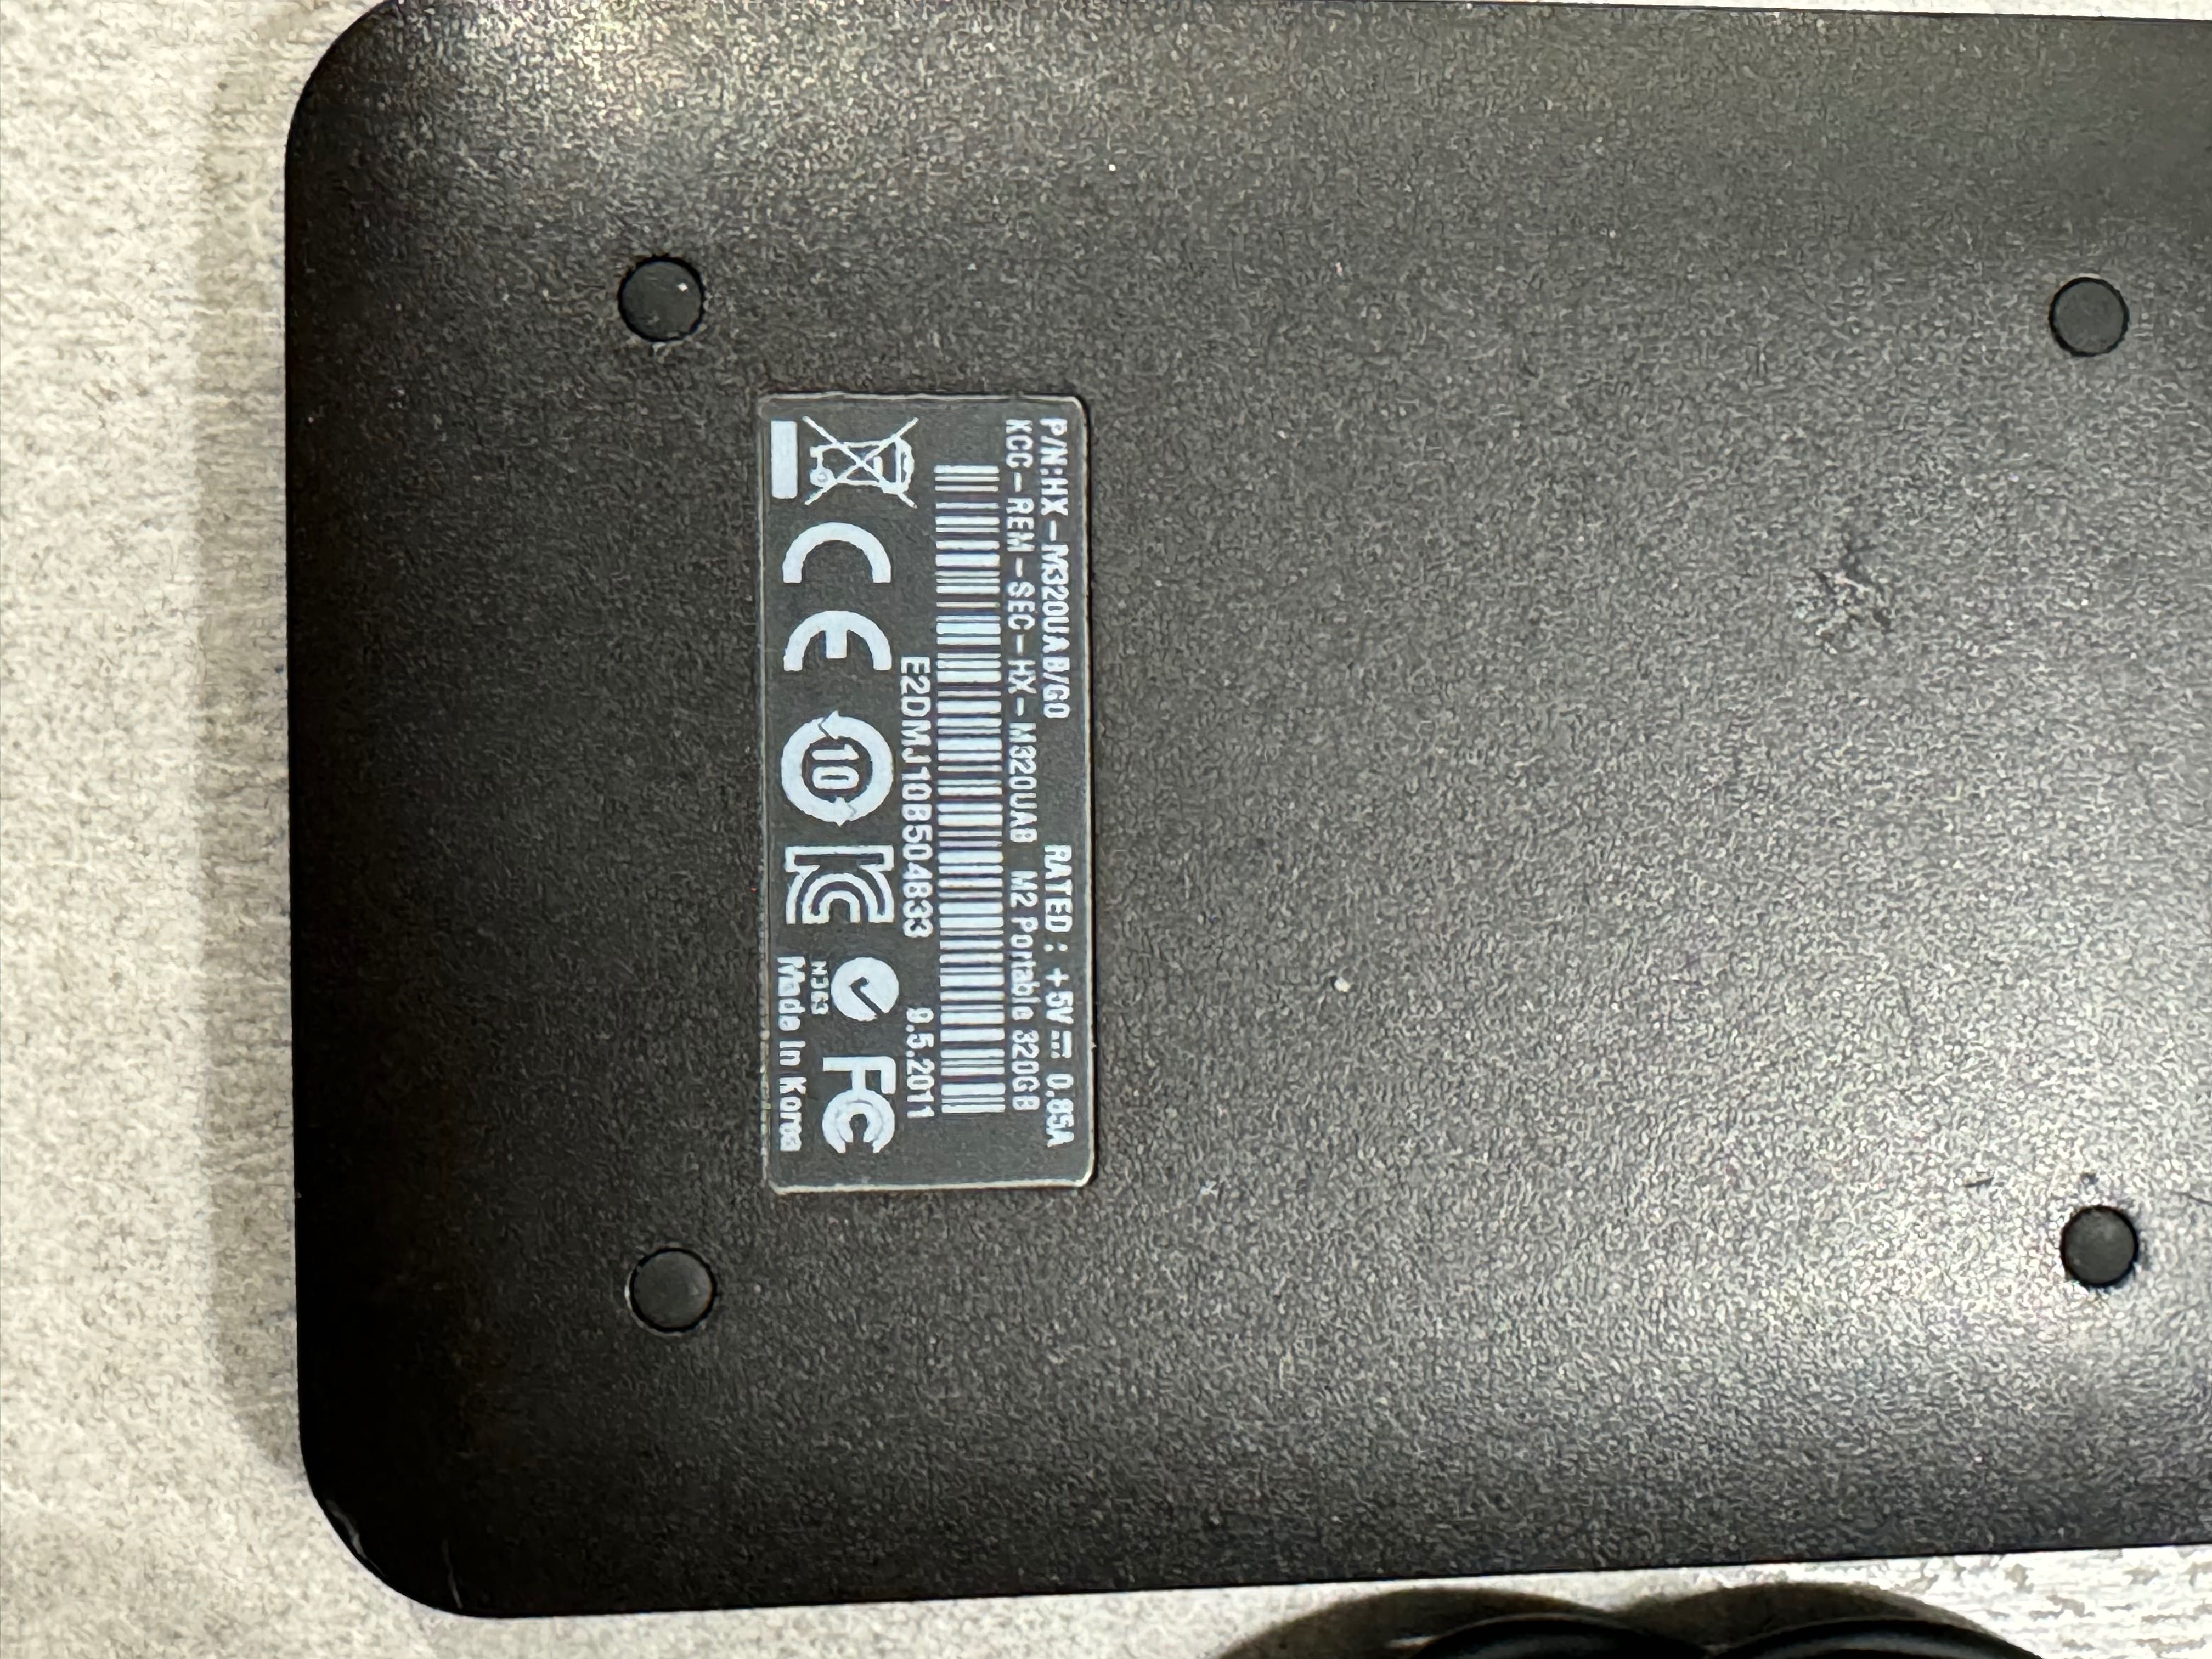 Dysk zewnętrzny Samsung M2 Portable 320GB Czarny